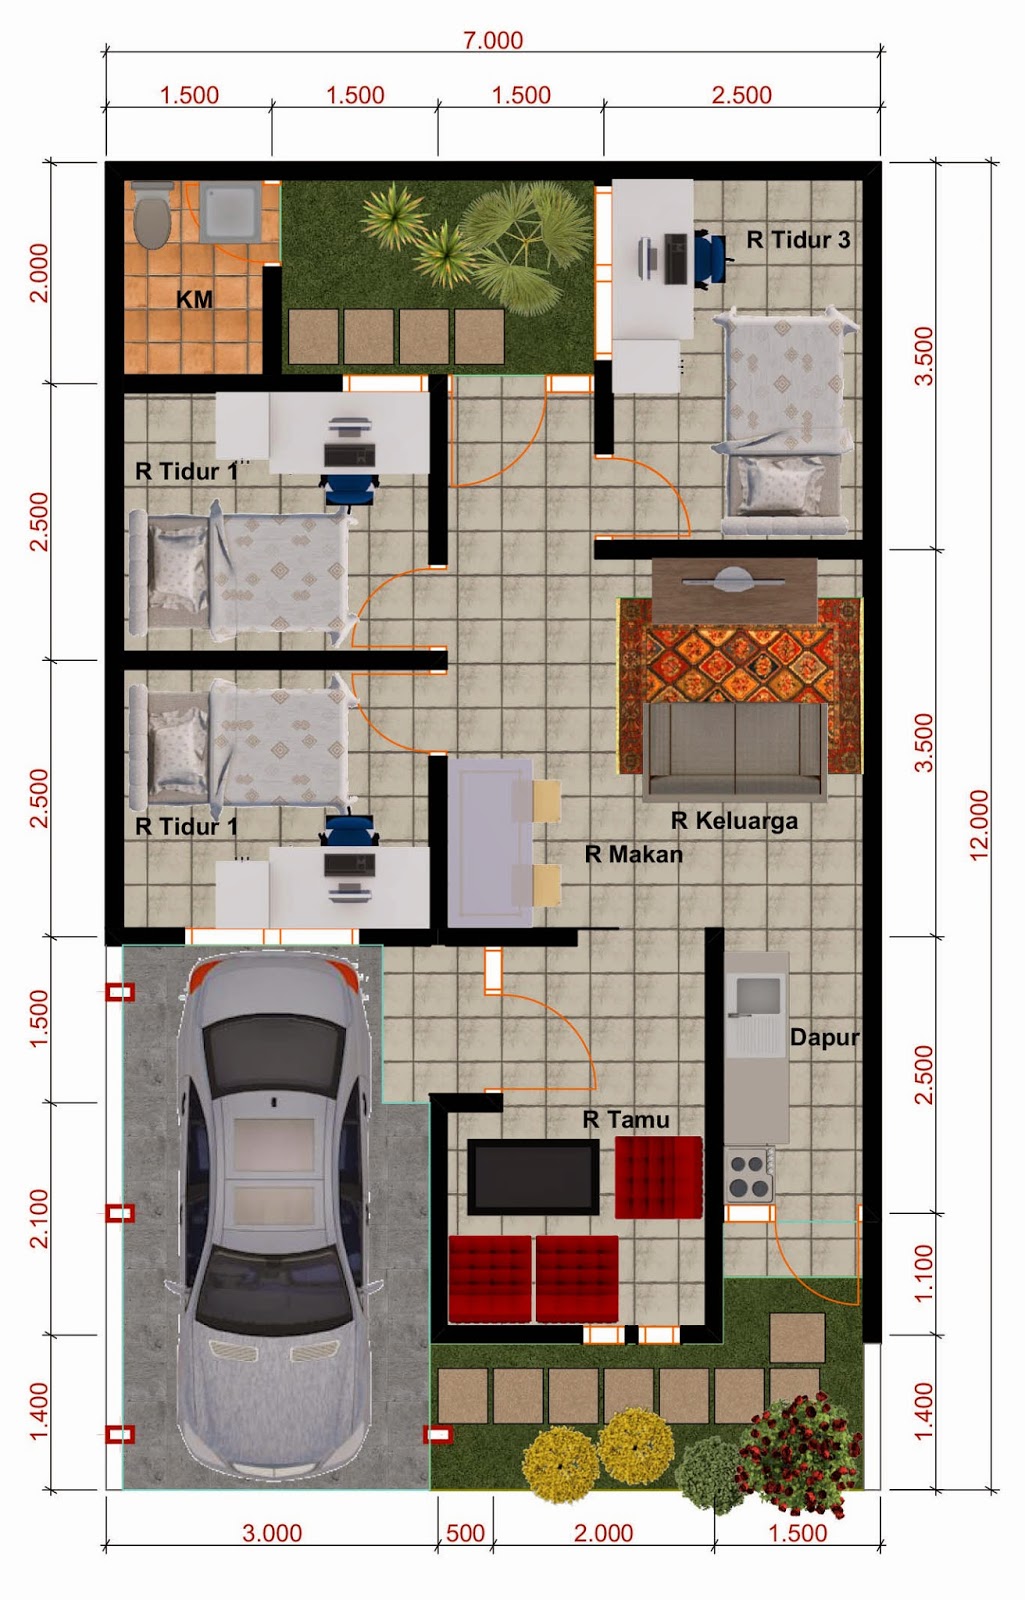 Koleksi Denah Rumah Minimalis Ukuran 6x12 Meter Arsitur Media Desain